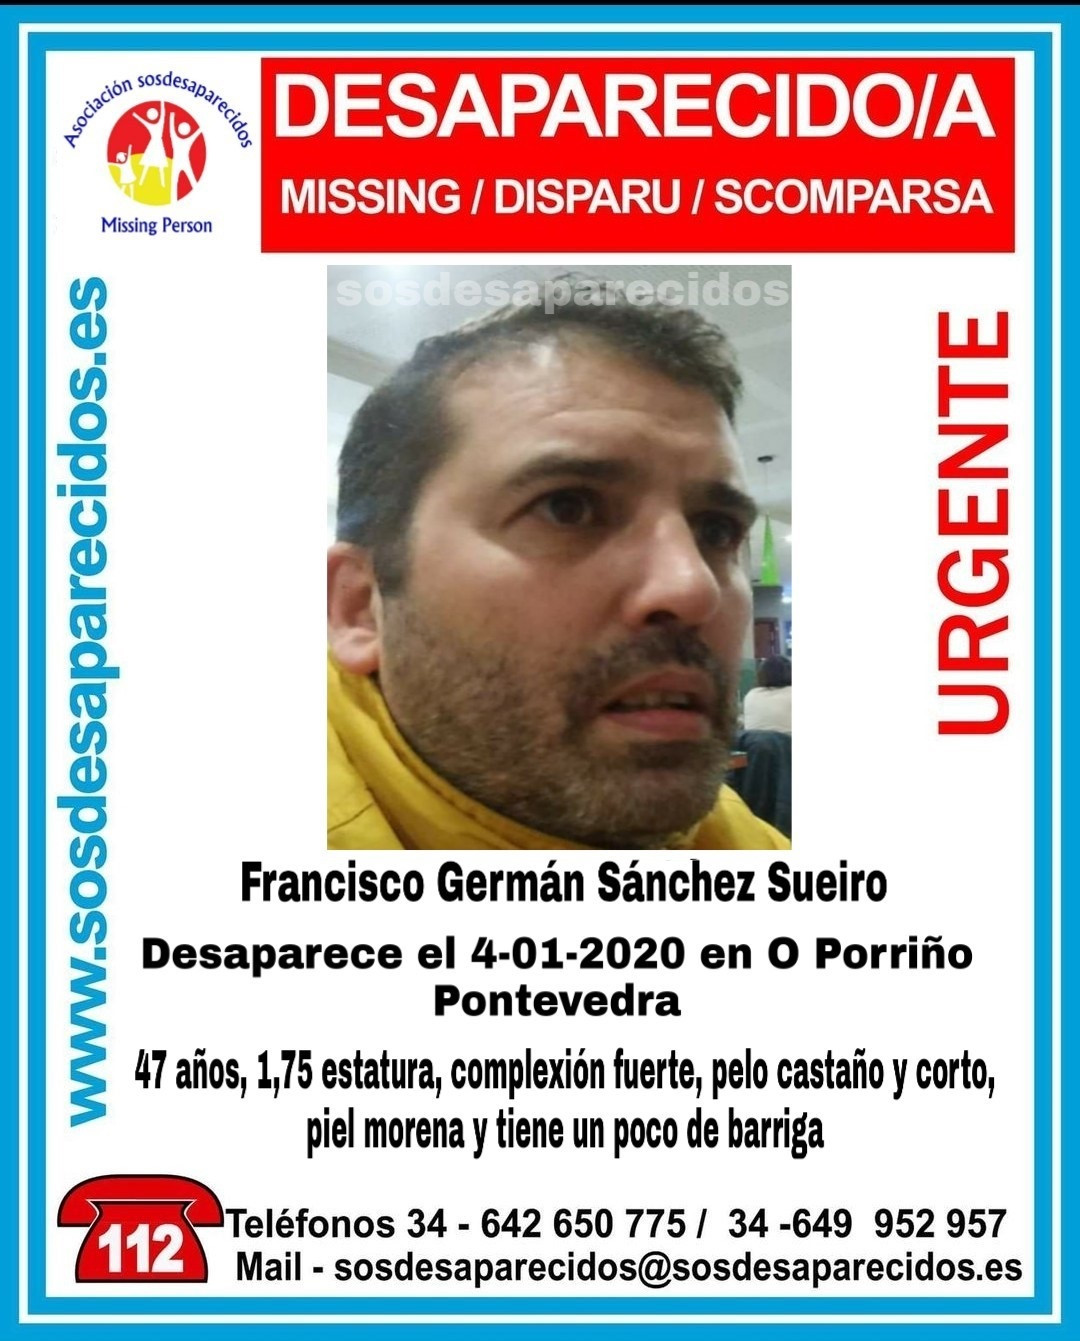 Veciño do Porriño (Pontevedra) desaparecido desde o 4 de xaneiro de 2020, cando saía de traballar nunha panadería.